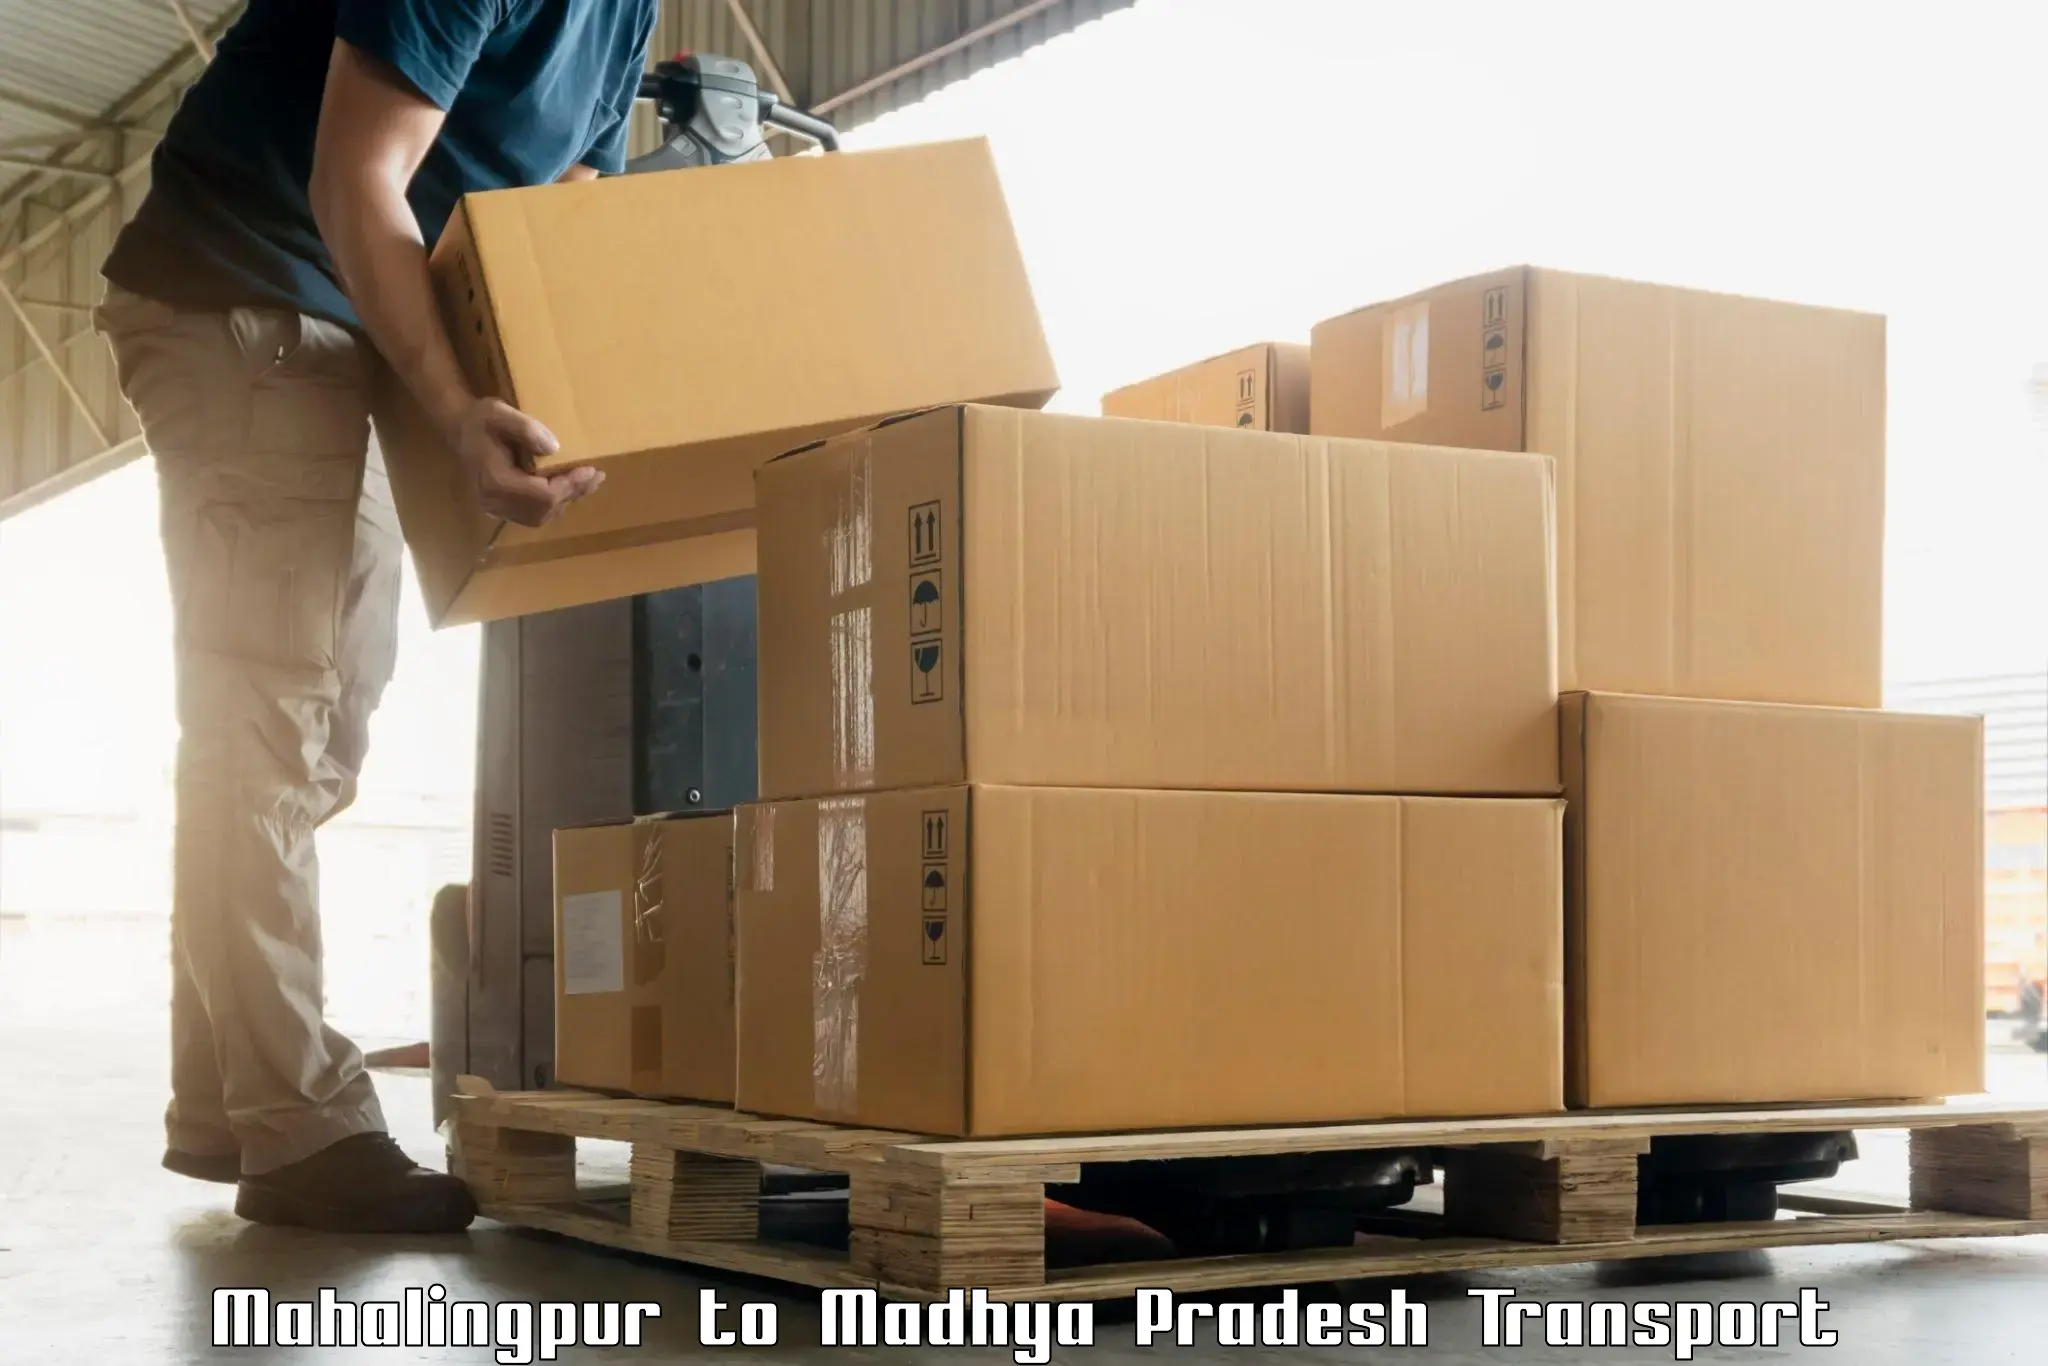 Air cargo transport services Mahalingpur to Ashoknagar